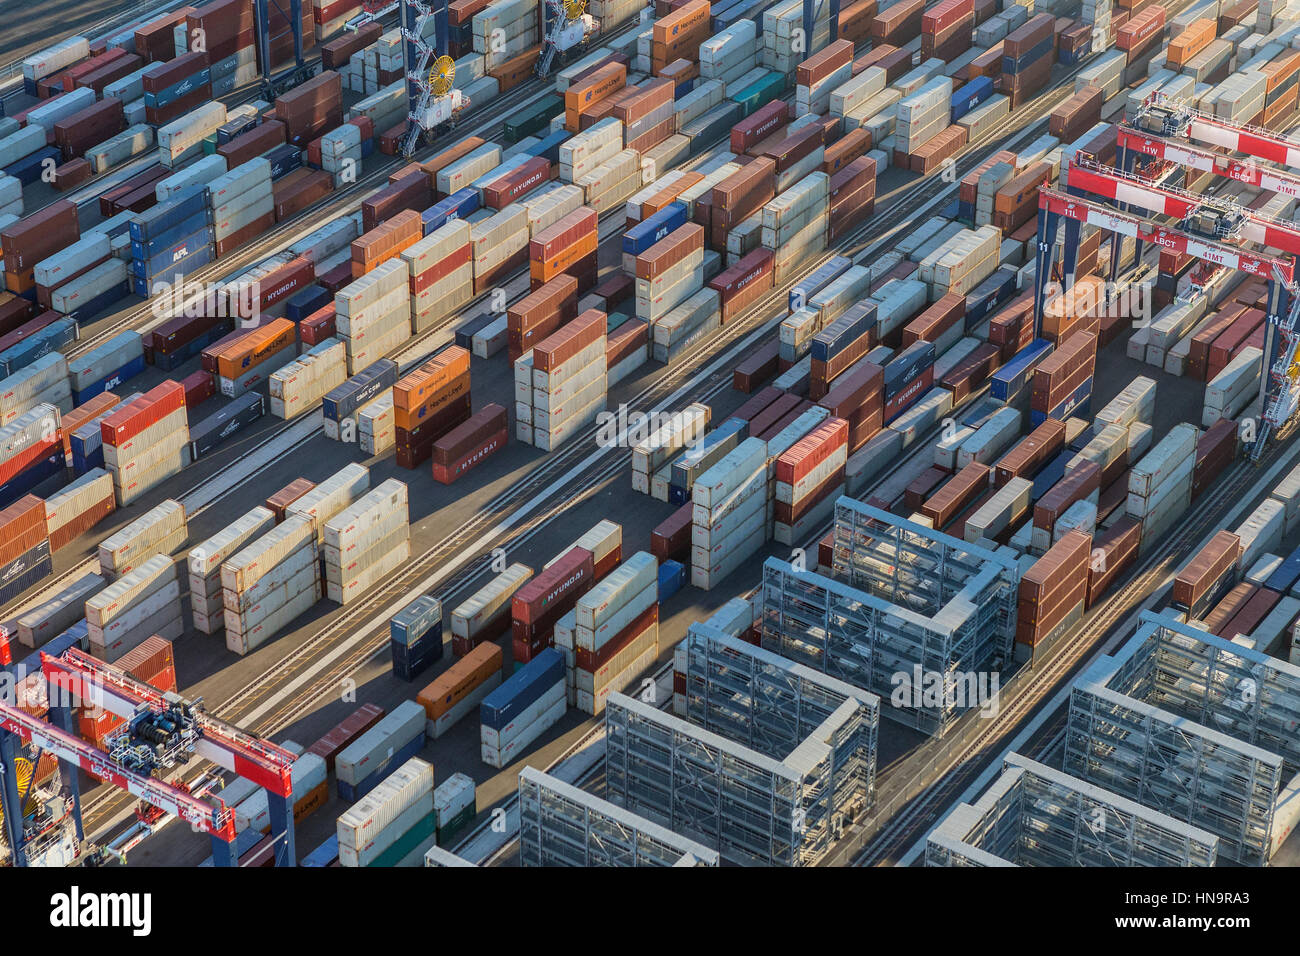 Los Angeles, California, Stati Uniti d'America - Agosto 16, 2016: Pomeriggio Vista aerea della spedizione cargo contenitori impilati sul dock. Foto Stock